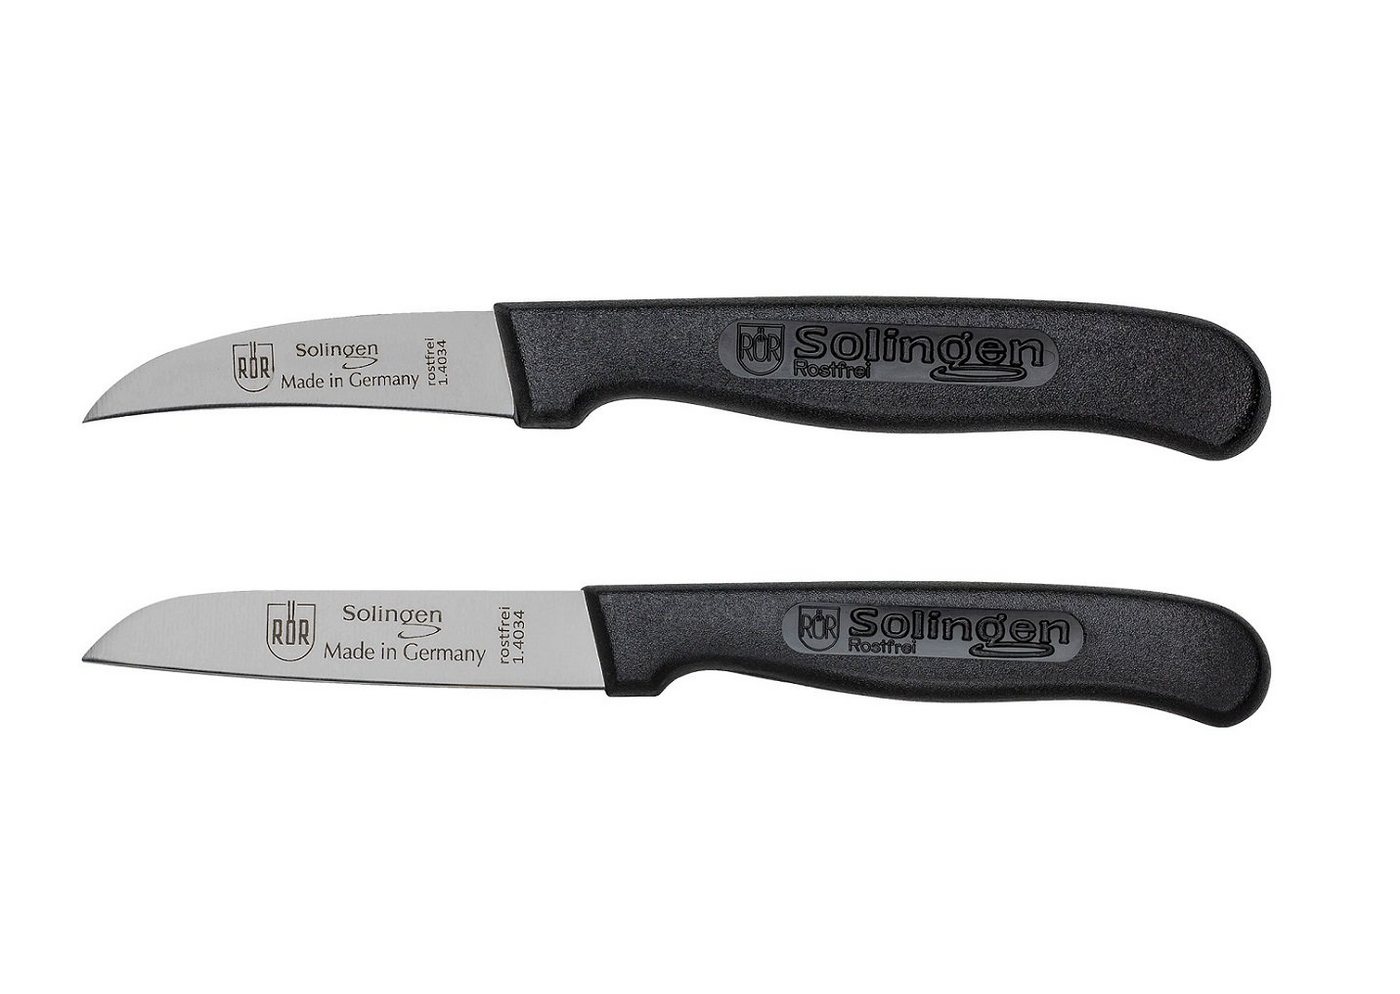 RÖR Messer-Set 10164-2, Schäl-/Küchenmesser Set 2-teilig, einfache Handhabung, perfekt für jede Küche - Made in Solingen von RÖR